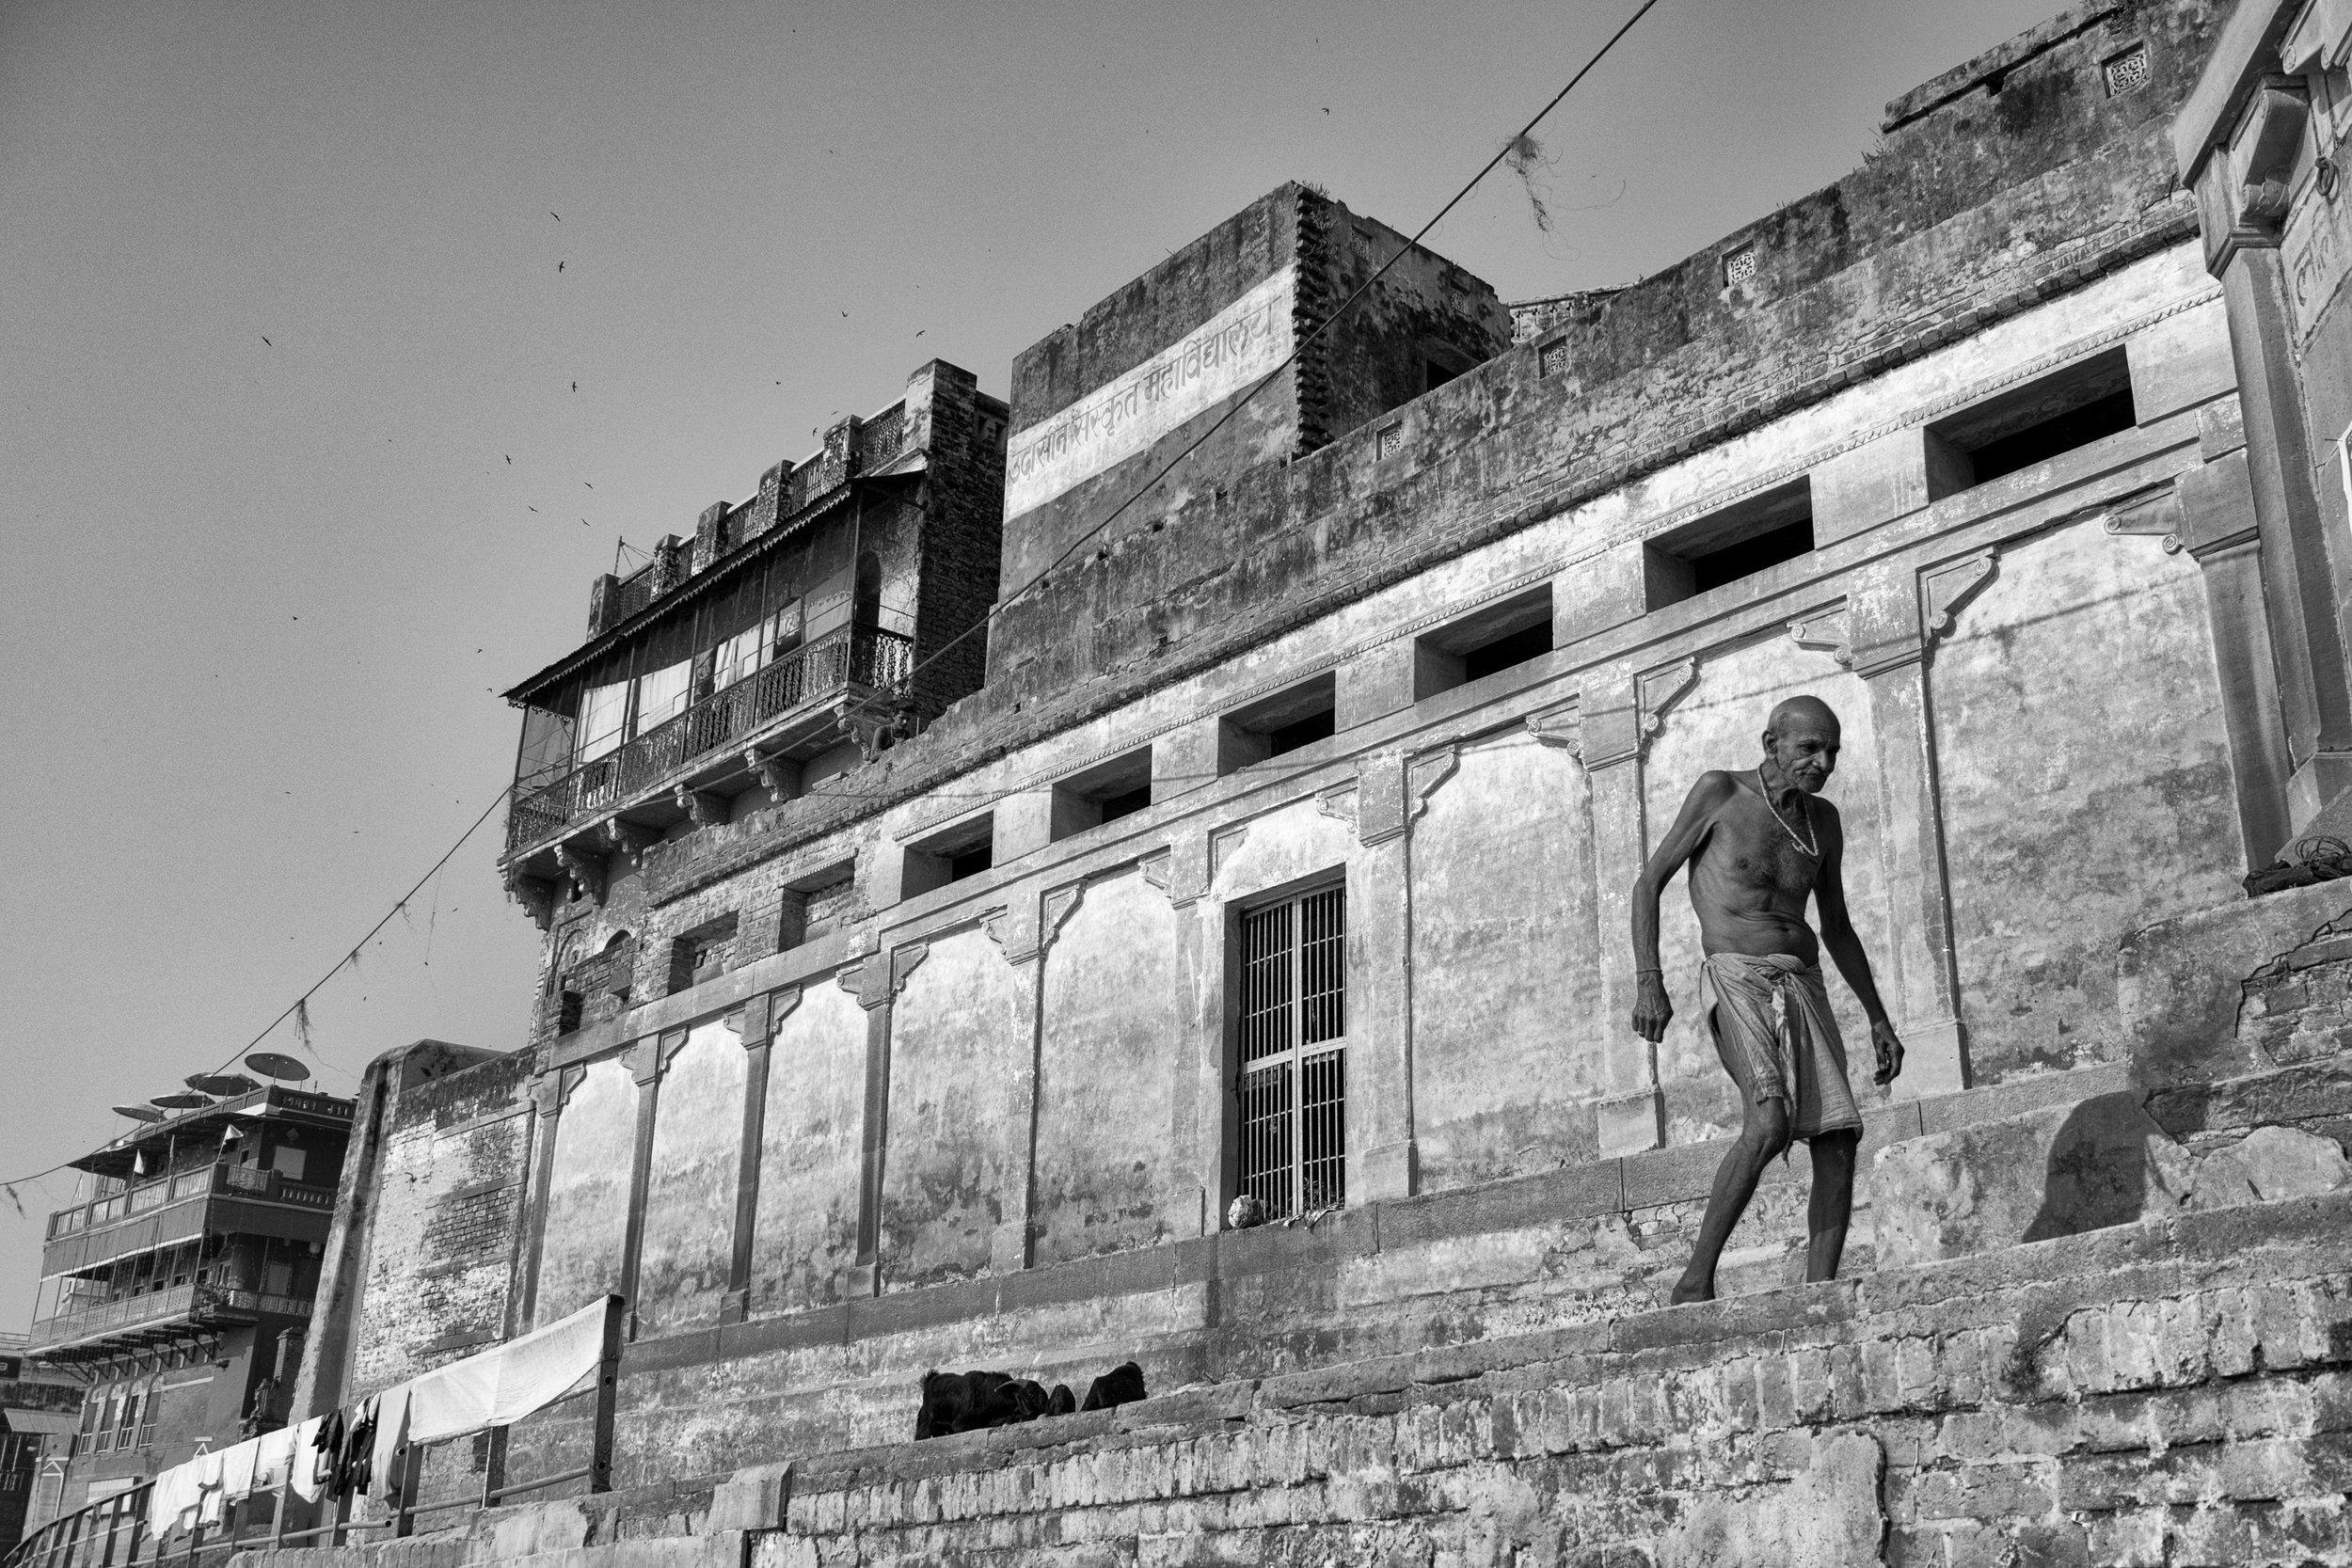 Man Walking Along Ghat Framed Against Wall in Black and White - Varanasi, India - Copyright 2016 Ralph Velasco.jpg